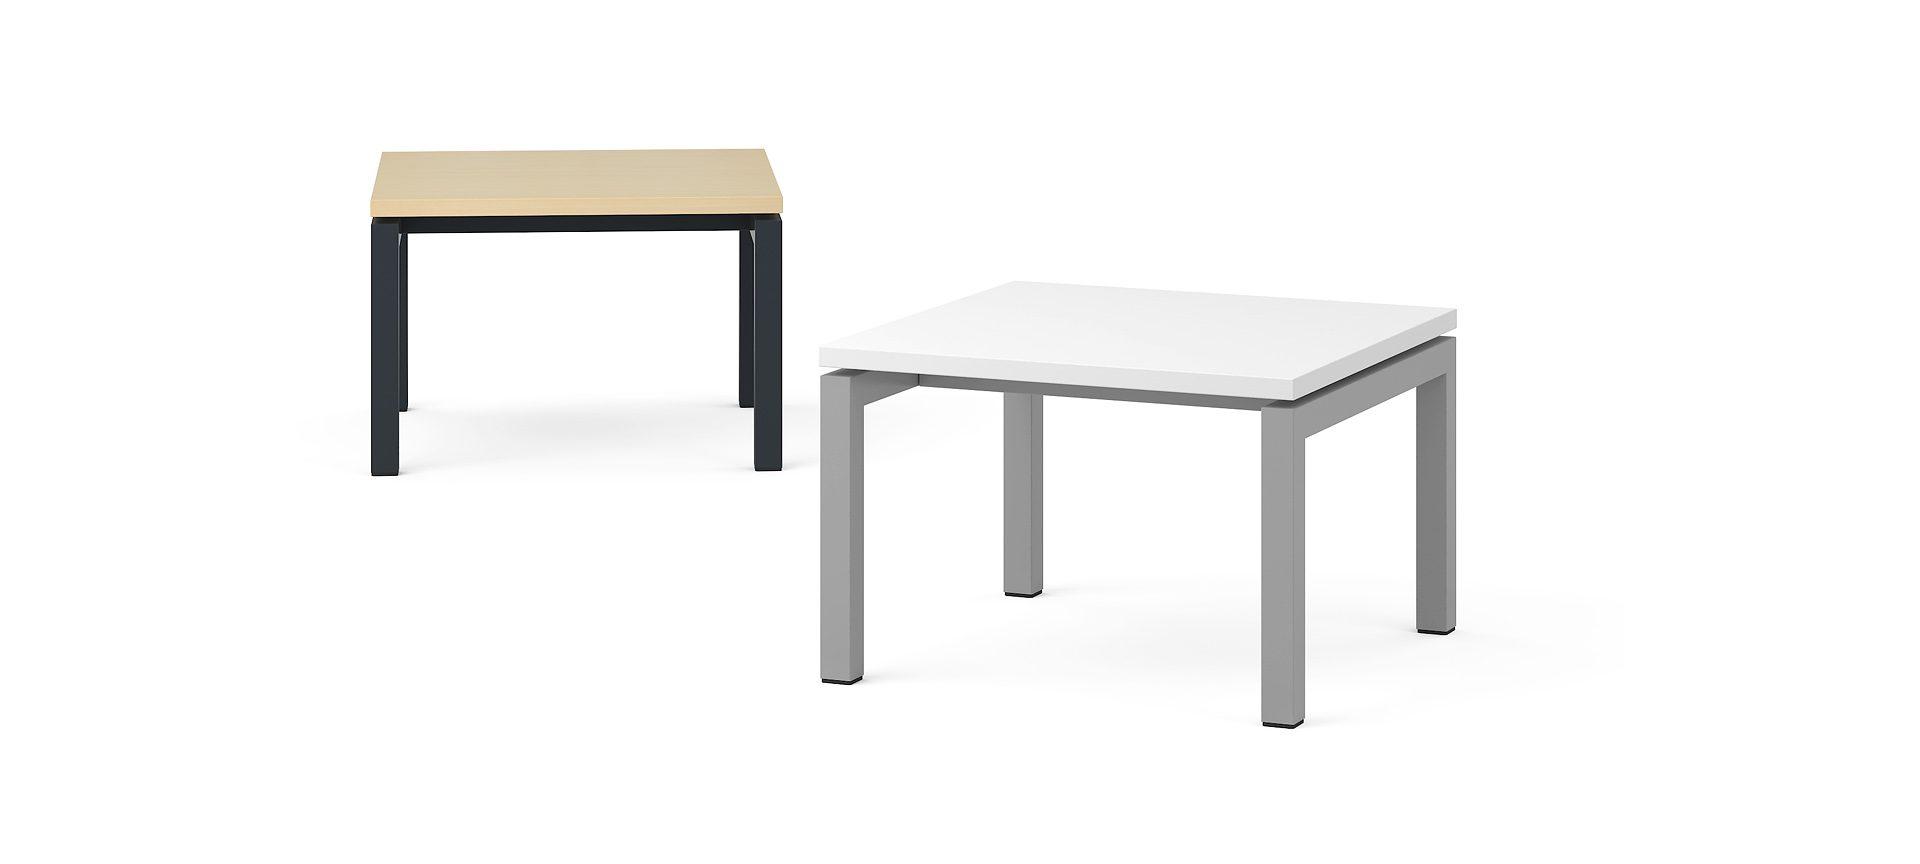 Кофейный столик NOVA, 600x600x400 мм Цвет столешницы: M1 - Белый меламин, Цвет ножек: E - Белая